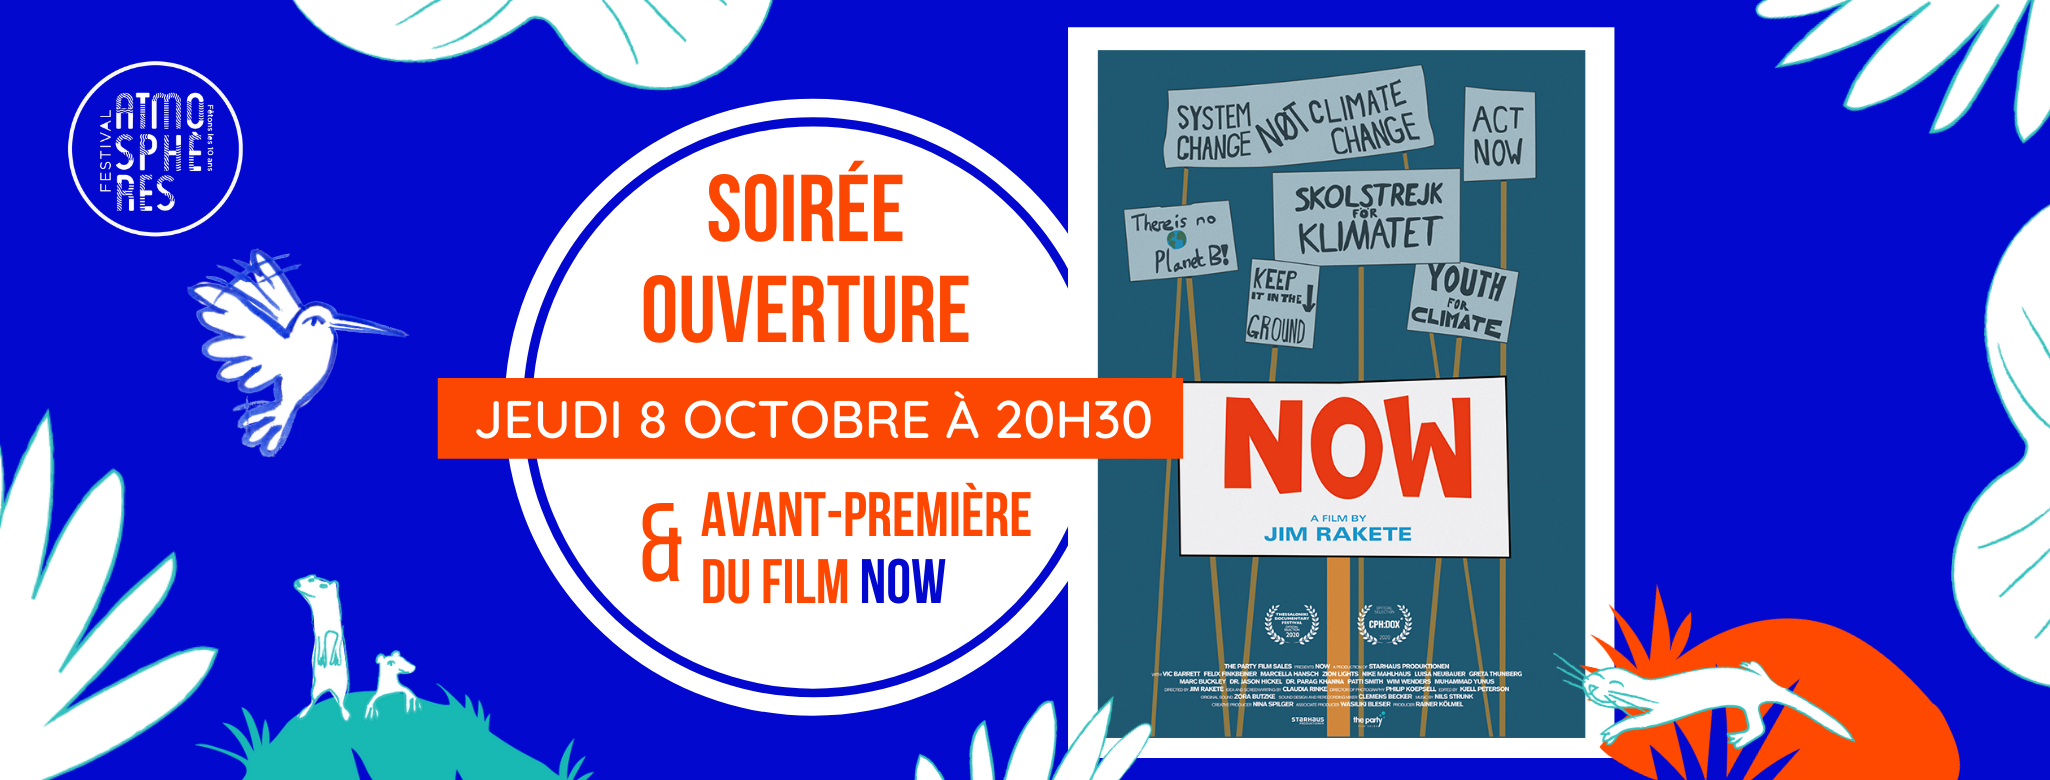 SOIRÉE D’OUVERTURE & AVANT-PREMIÈRE DU FILM NOW